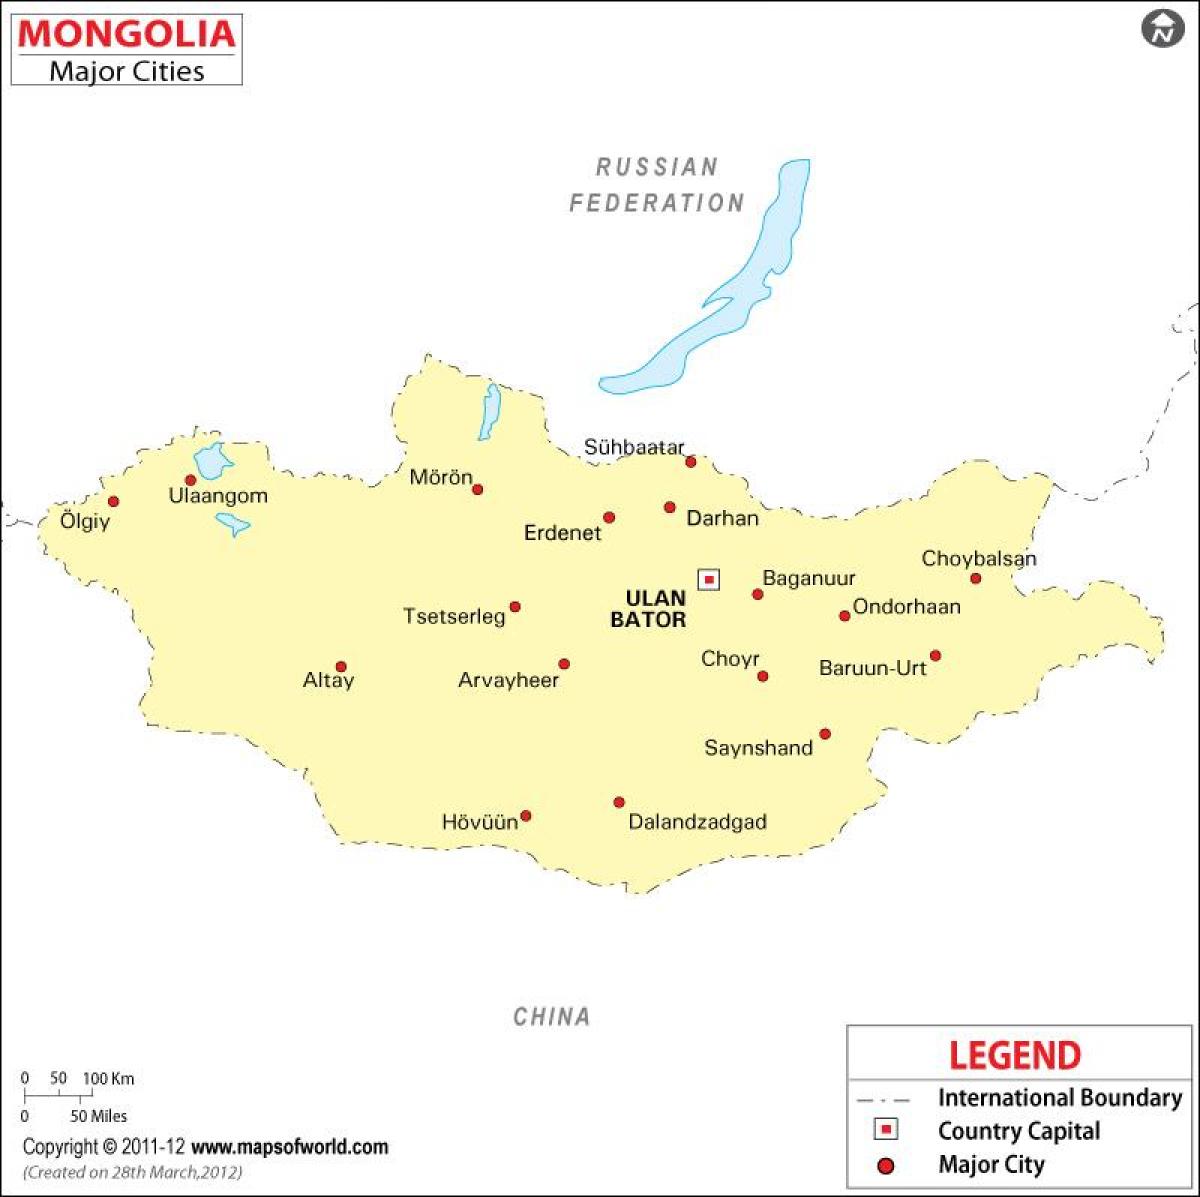 Kart Monqolustan ilə şəhərləri